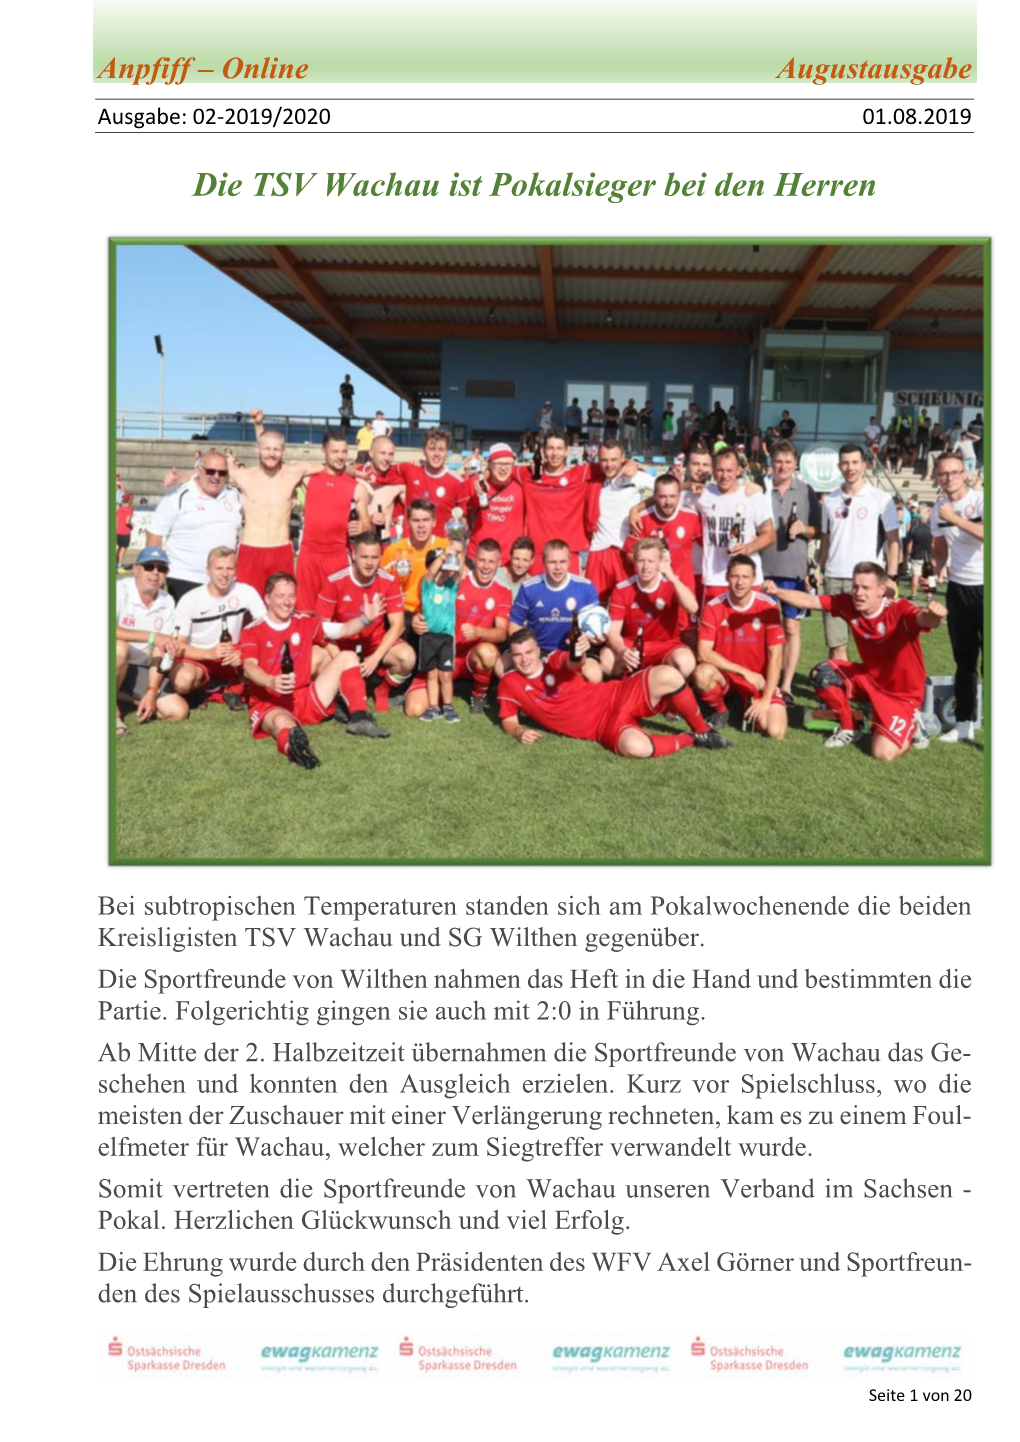 Die TSV Wachau Ist Pokalsieger Bei Den Herren